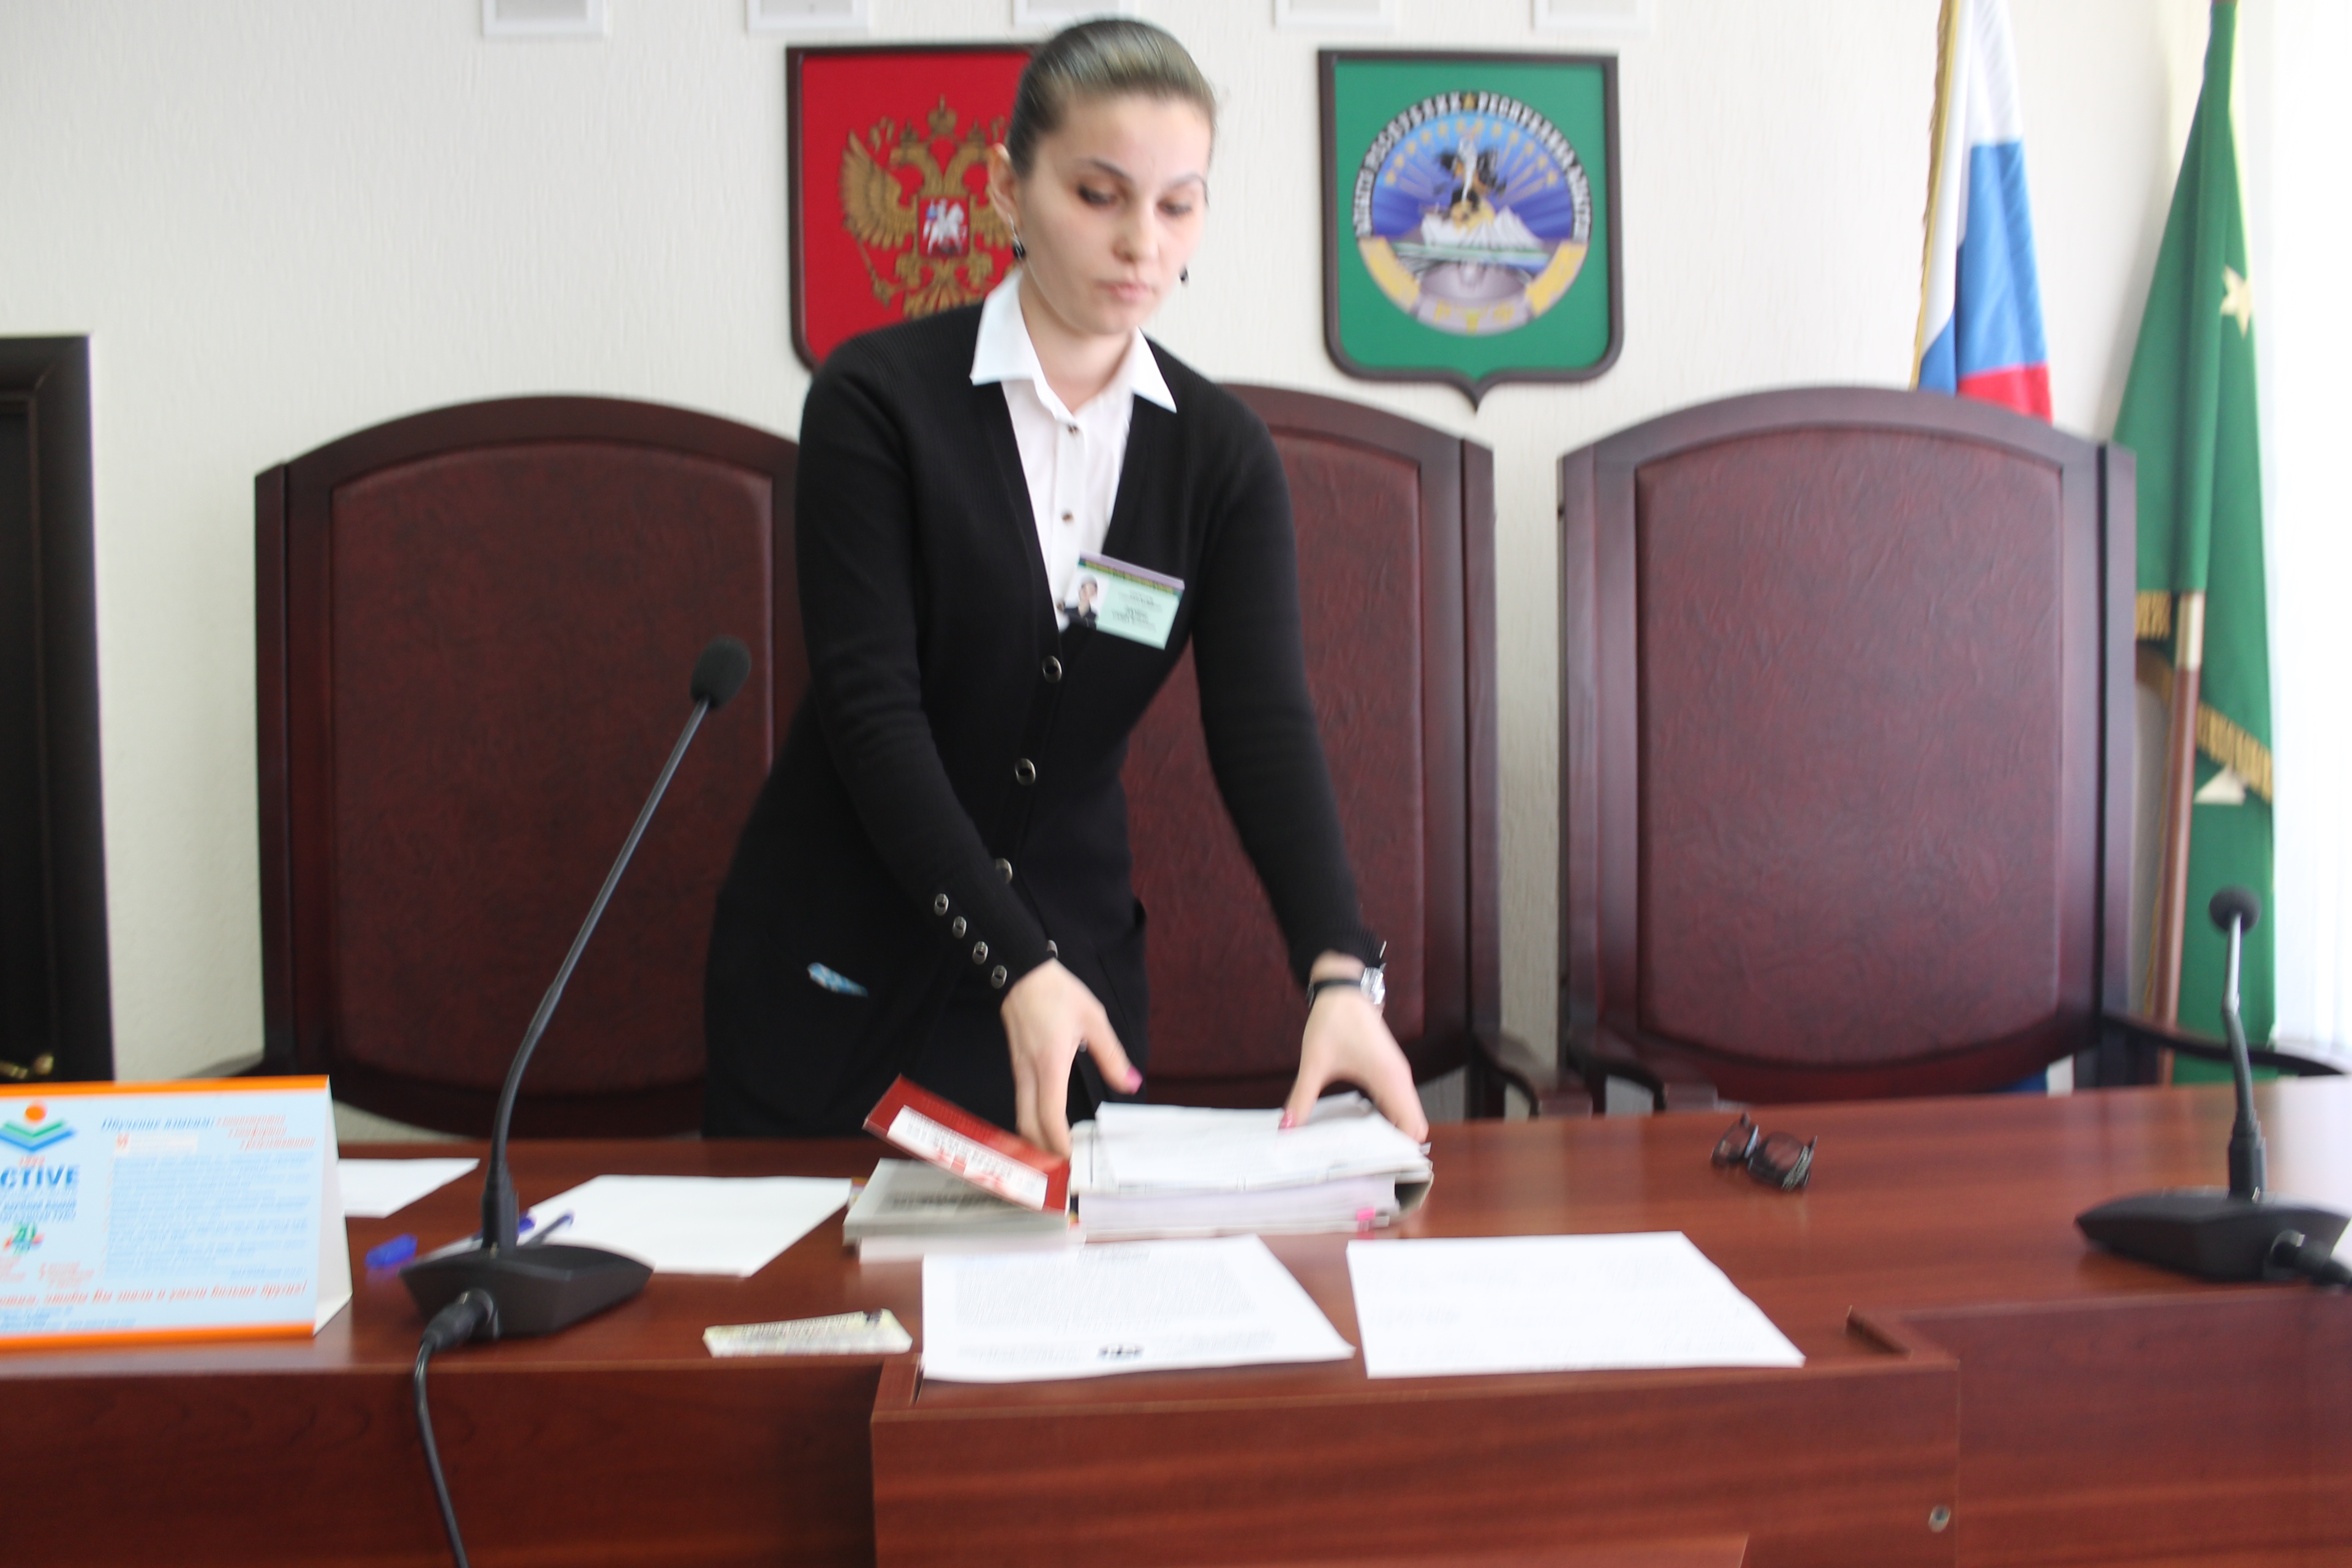 Сотрудник суда убрала заранее подготовленный протокол на стол судьи Кадакоевой